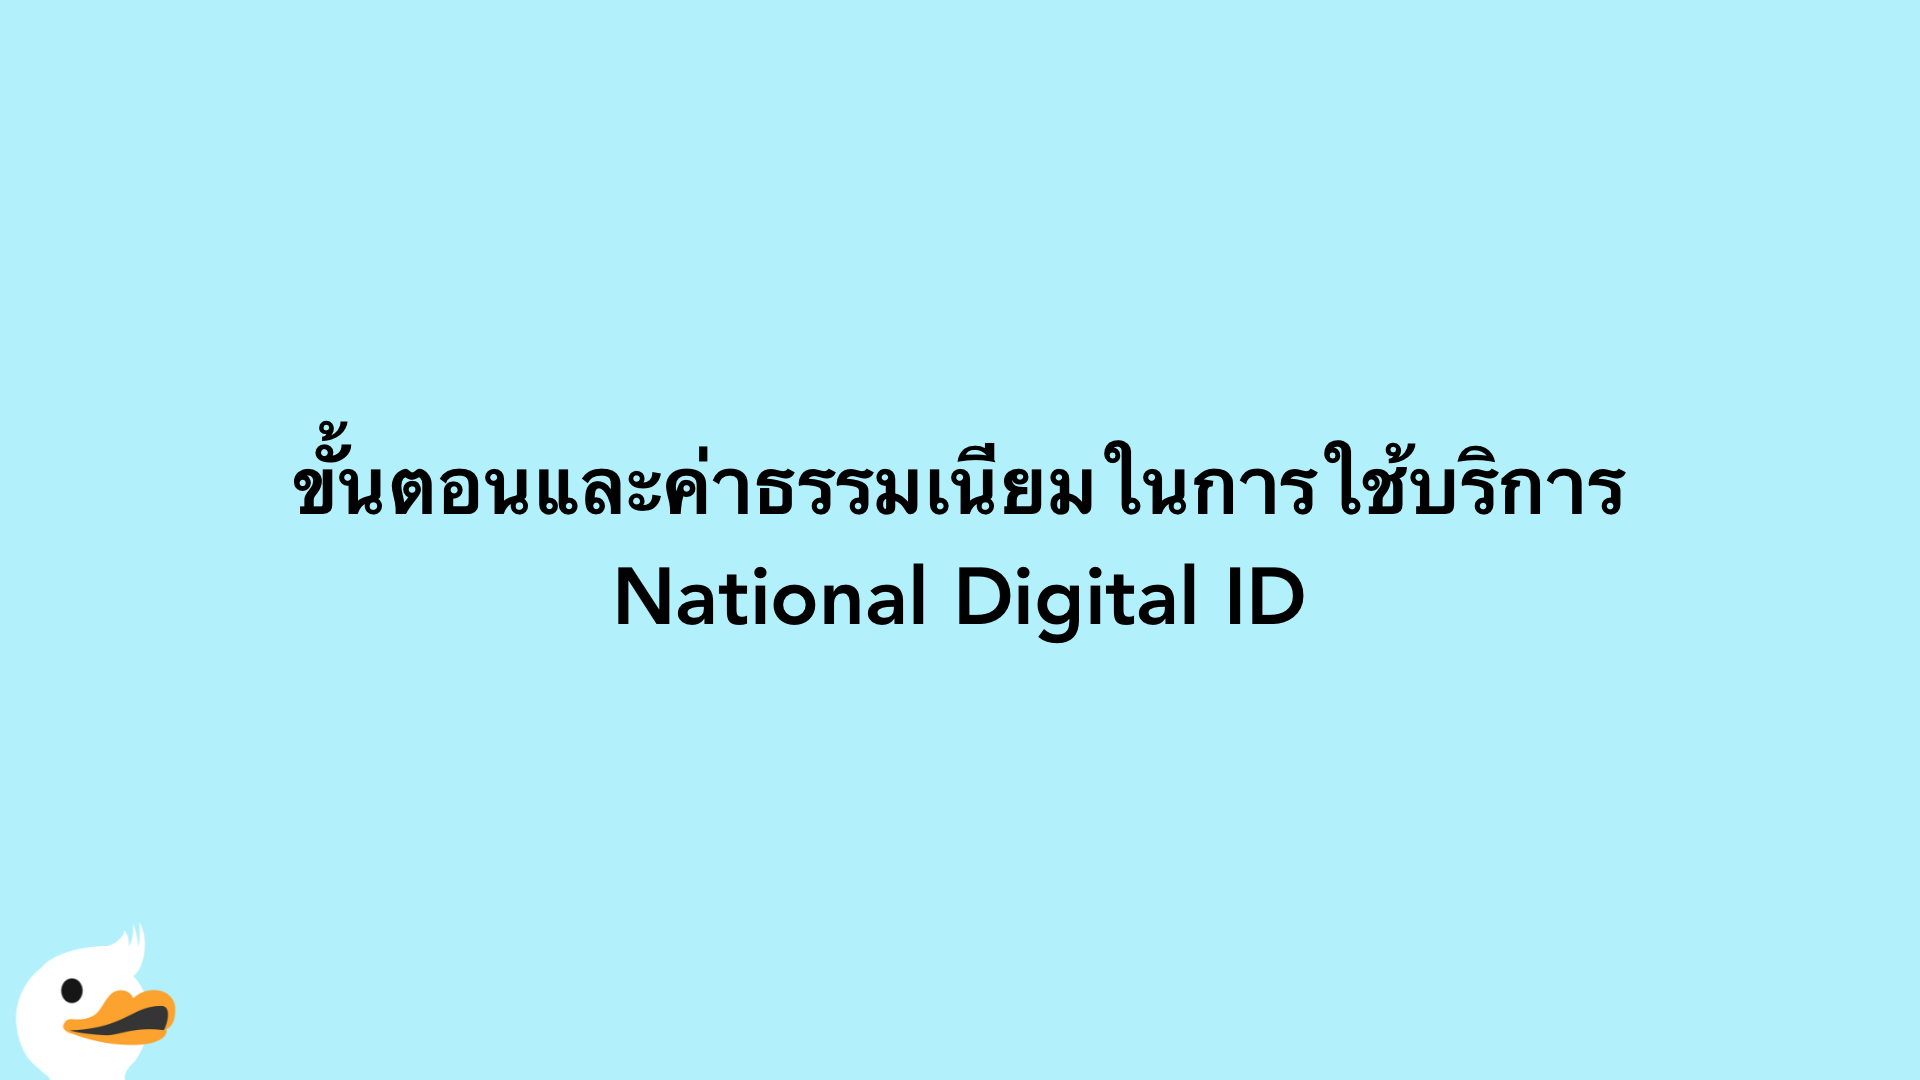 ขั้นตอนและค่าธรรมเนียมในการใช้บริการ National Digital ID